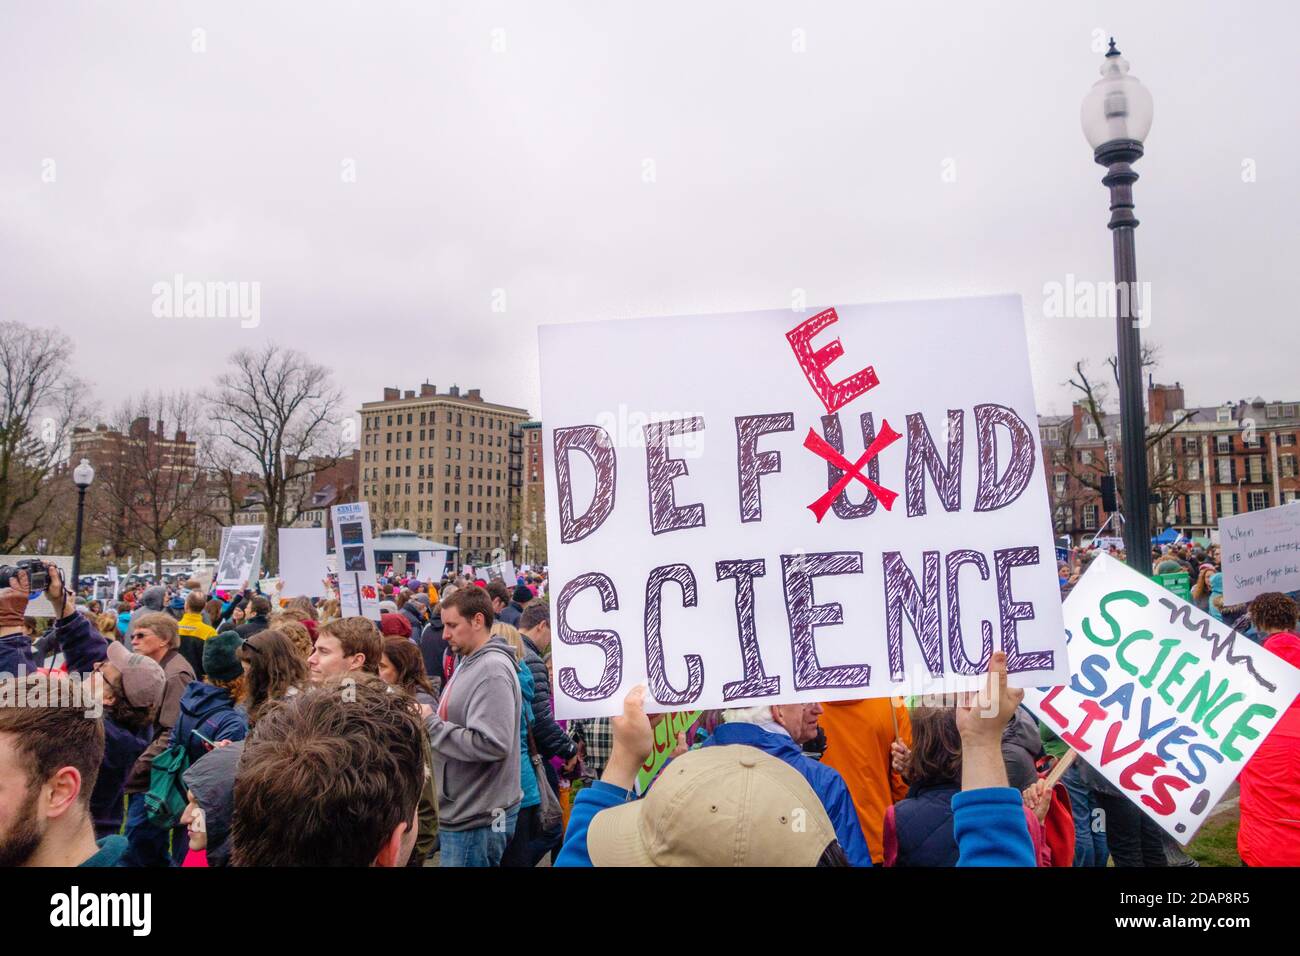 Des manifestants ont des signes à la manifestation sur le changement climatique à Boston, Massachusetts, États-Unis. Banque D'Images